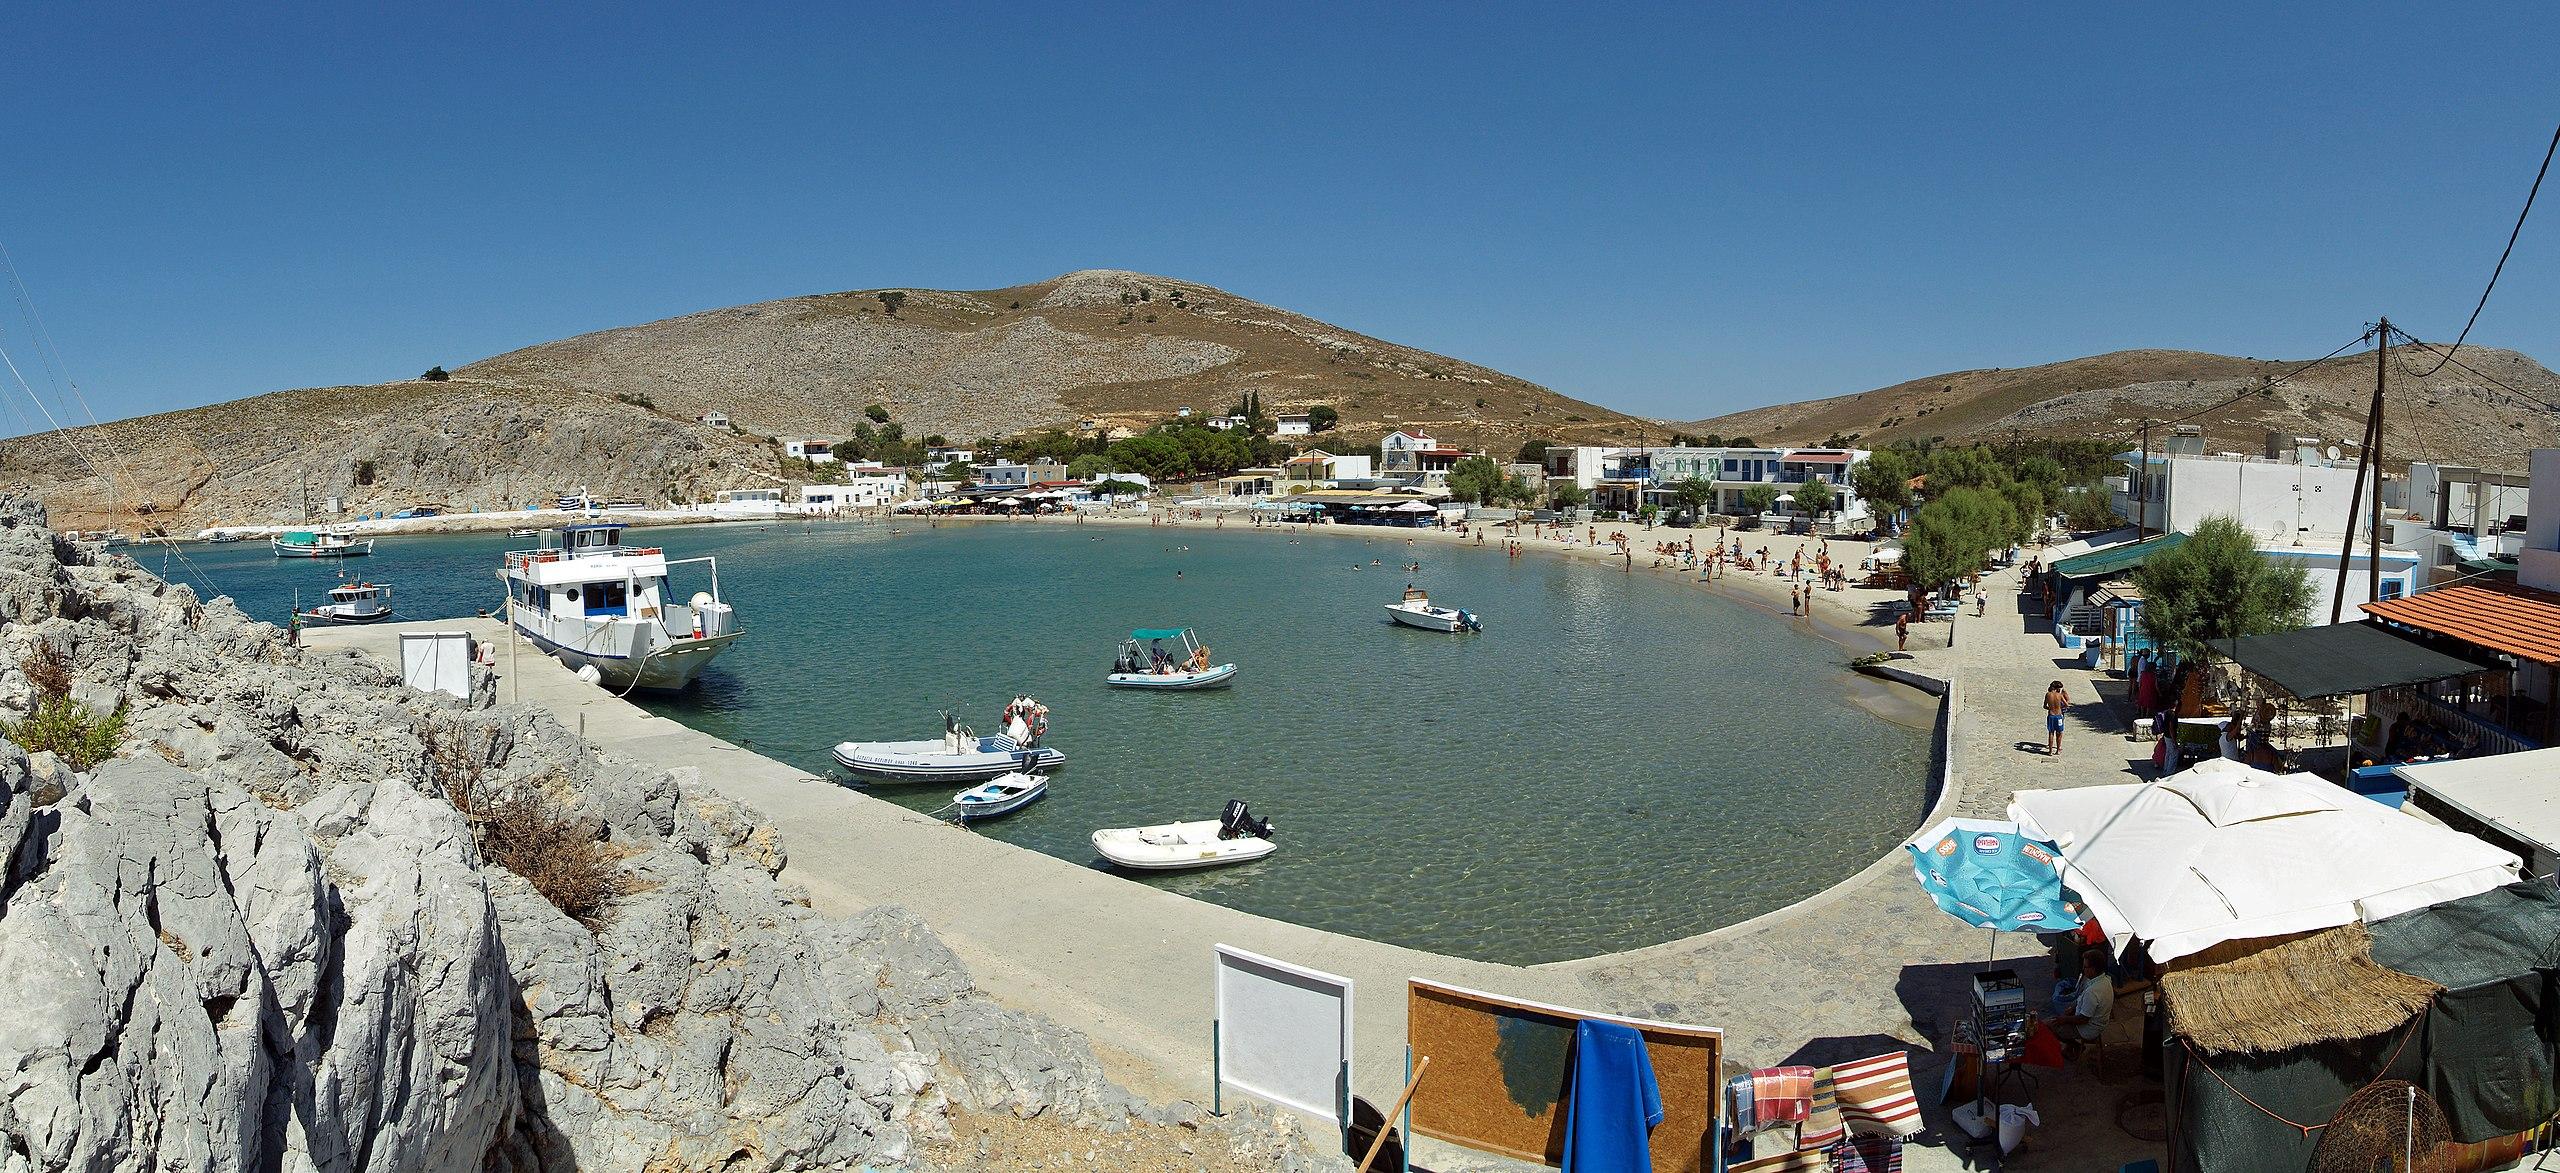 Το λιμάνι και ο κεντρικός οικισμός της Ψερίμου.